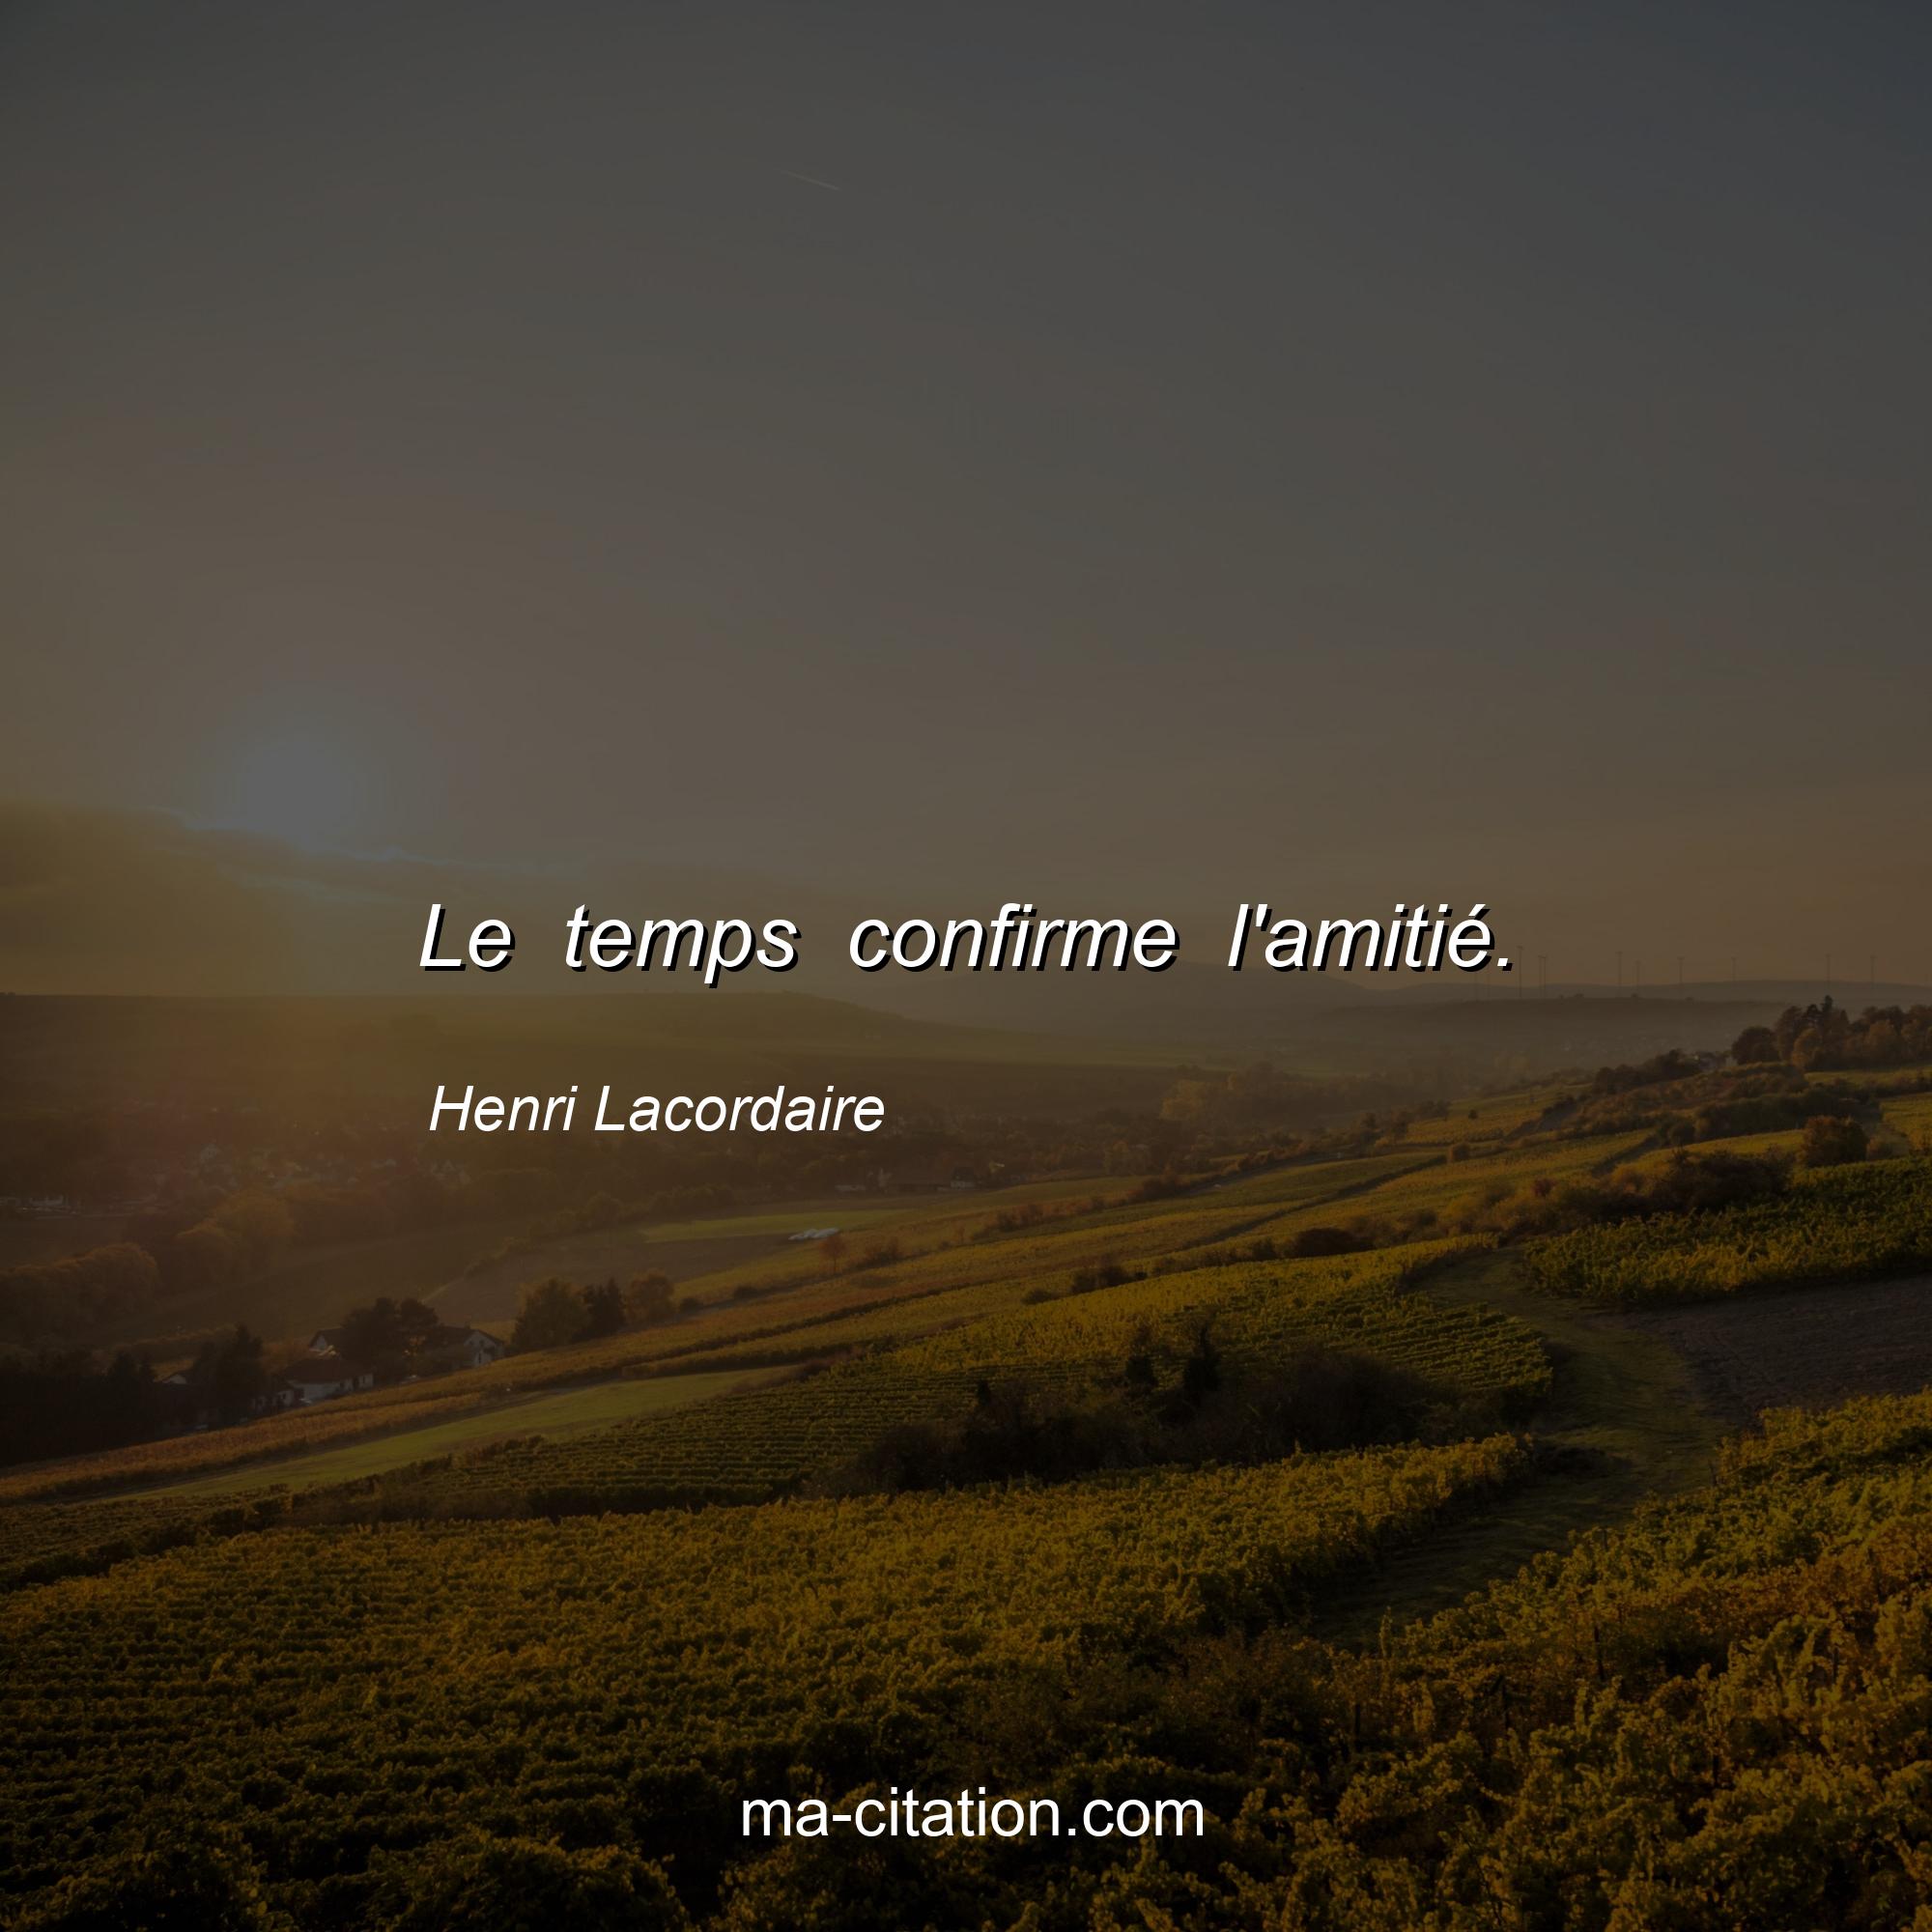 Henri Lacordaire : Le temps confirme l'amitié.